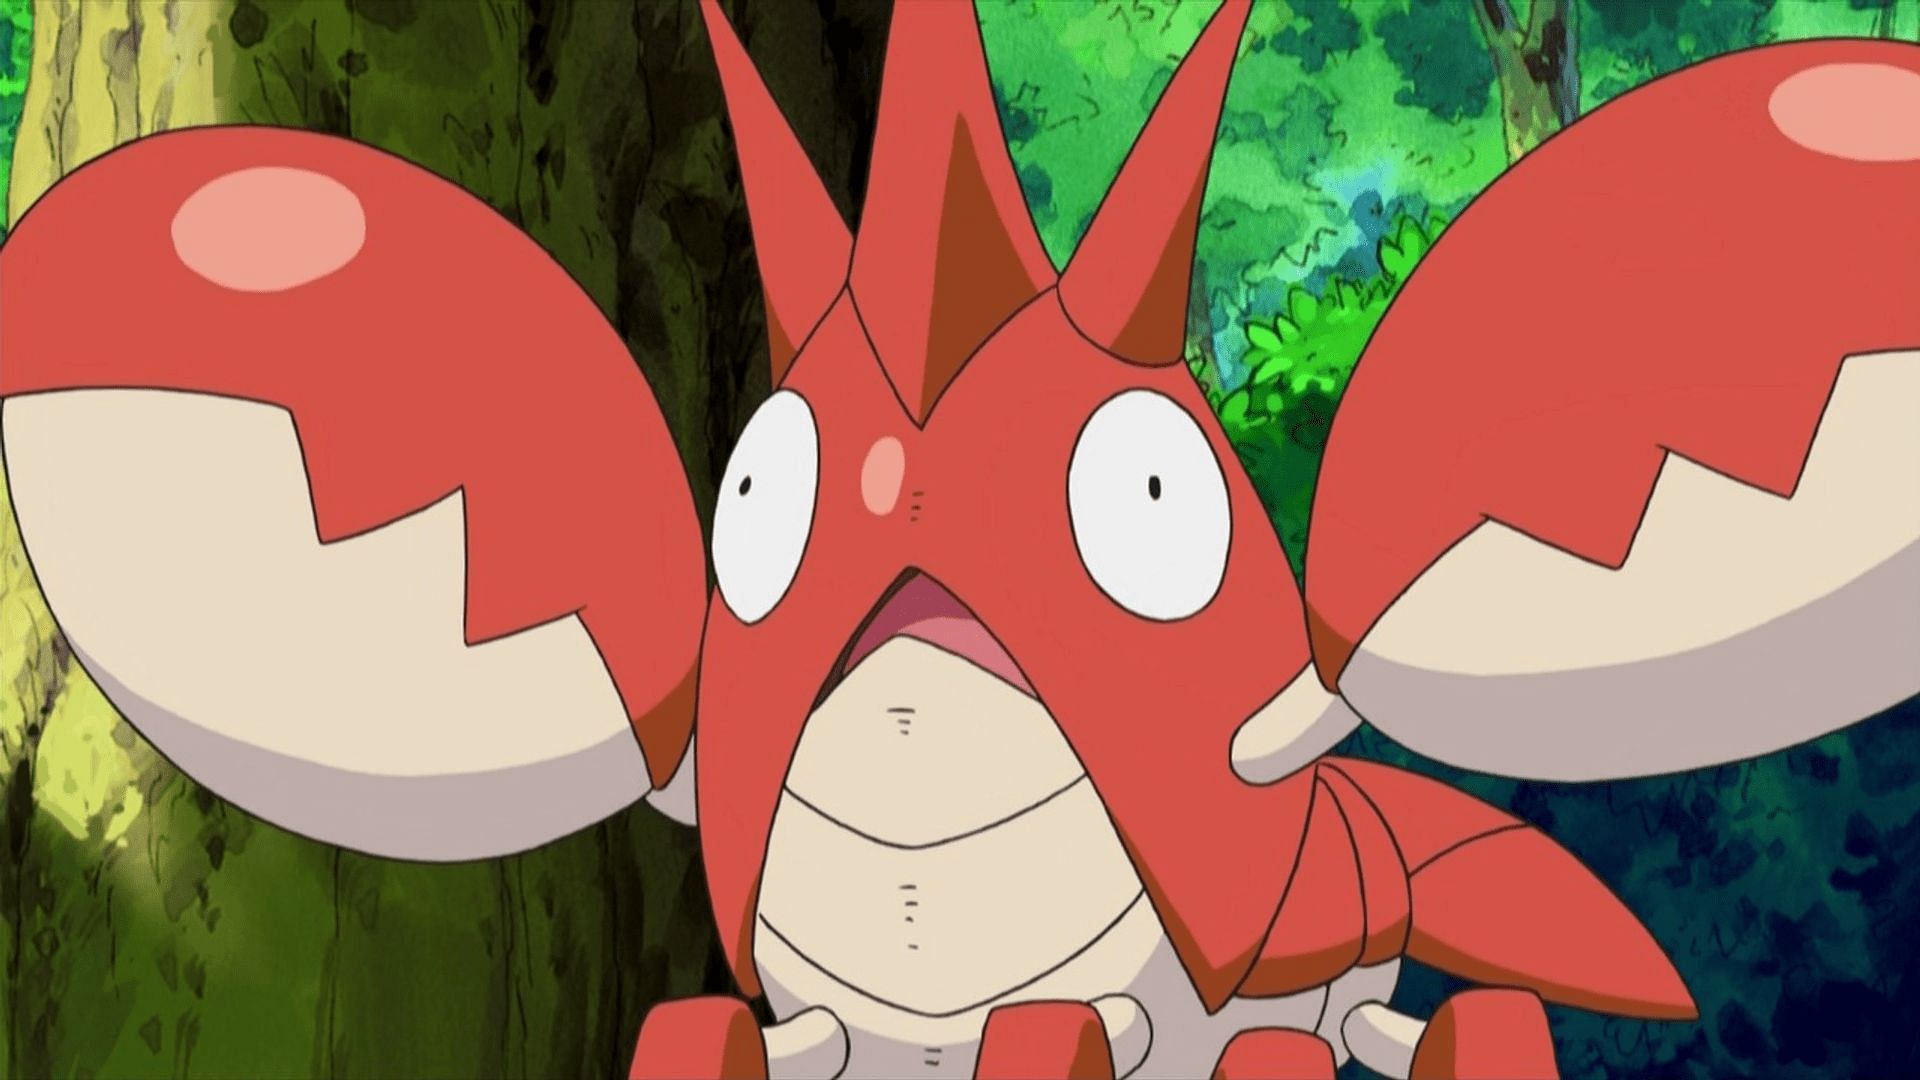 The Unreleased Hoenn Shinies In Pokémon GO – Part One